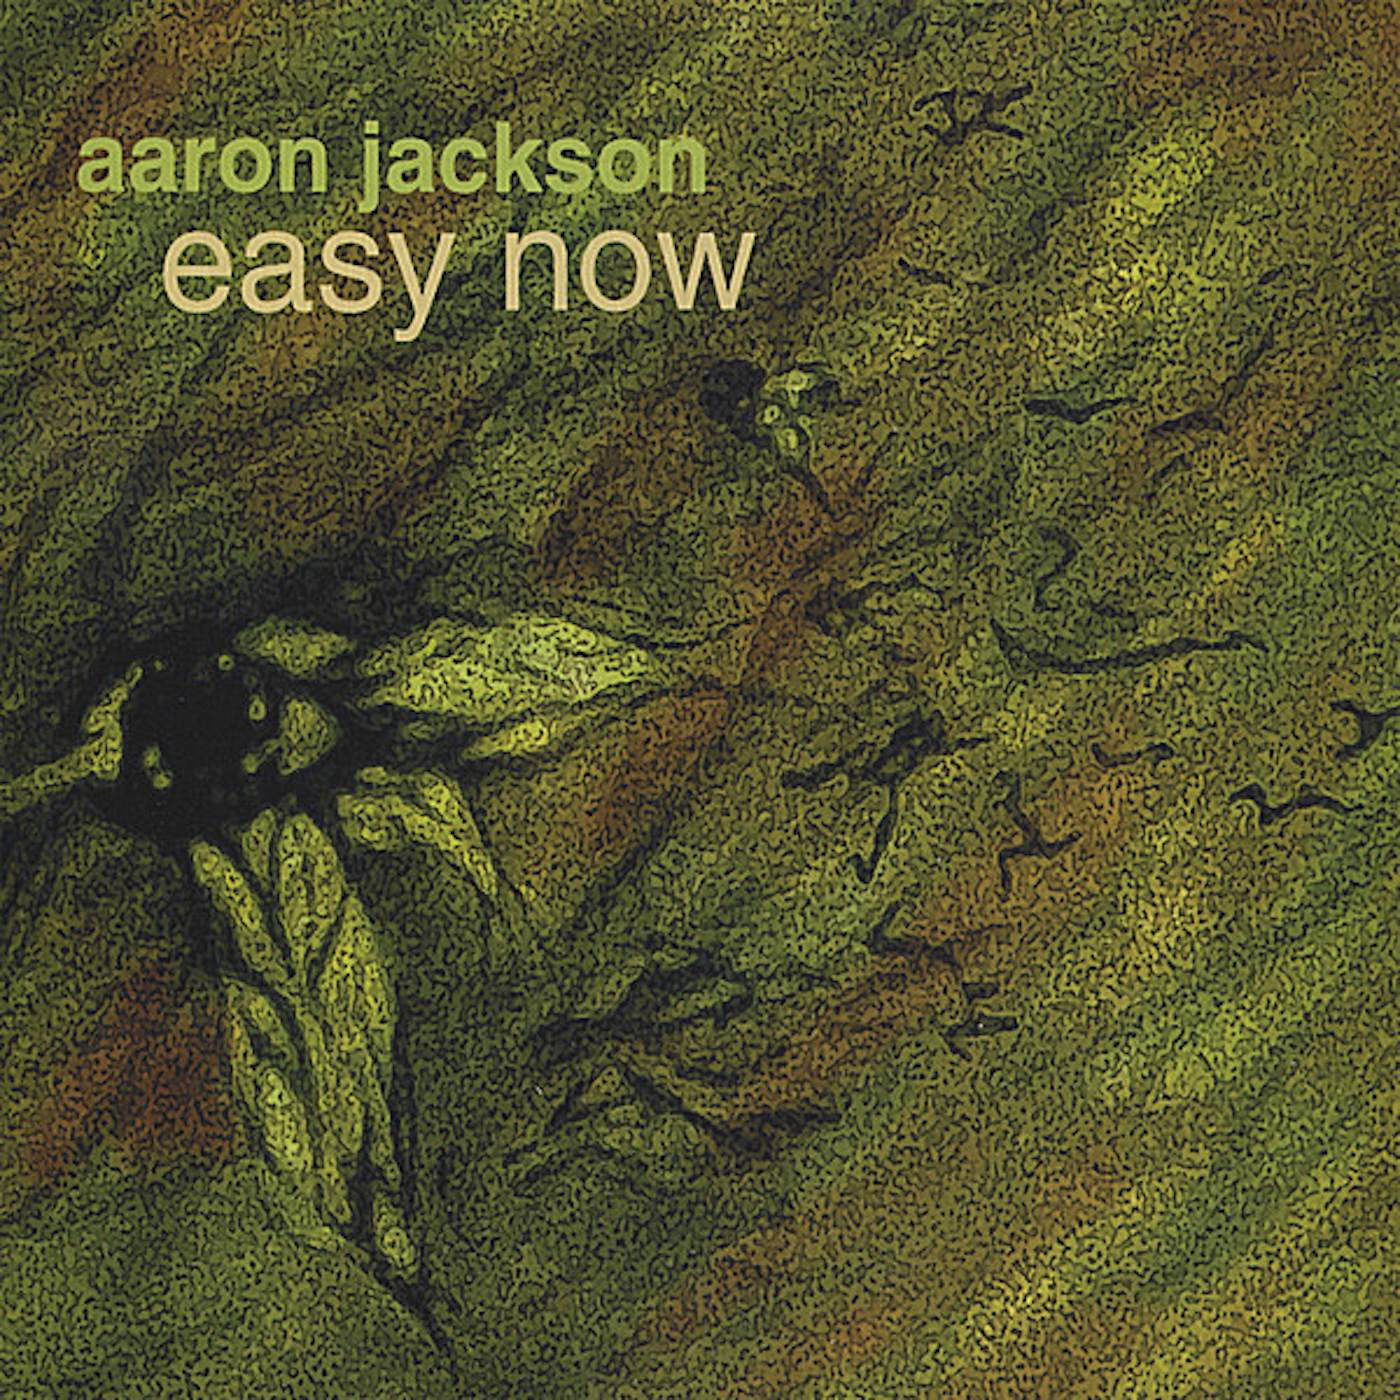 Aaron Jackson EASY NOW CD